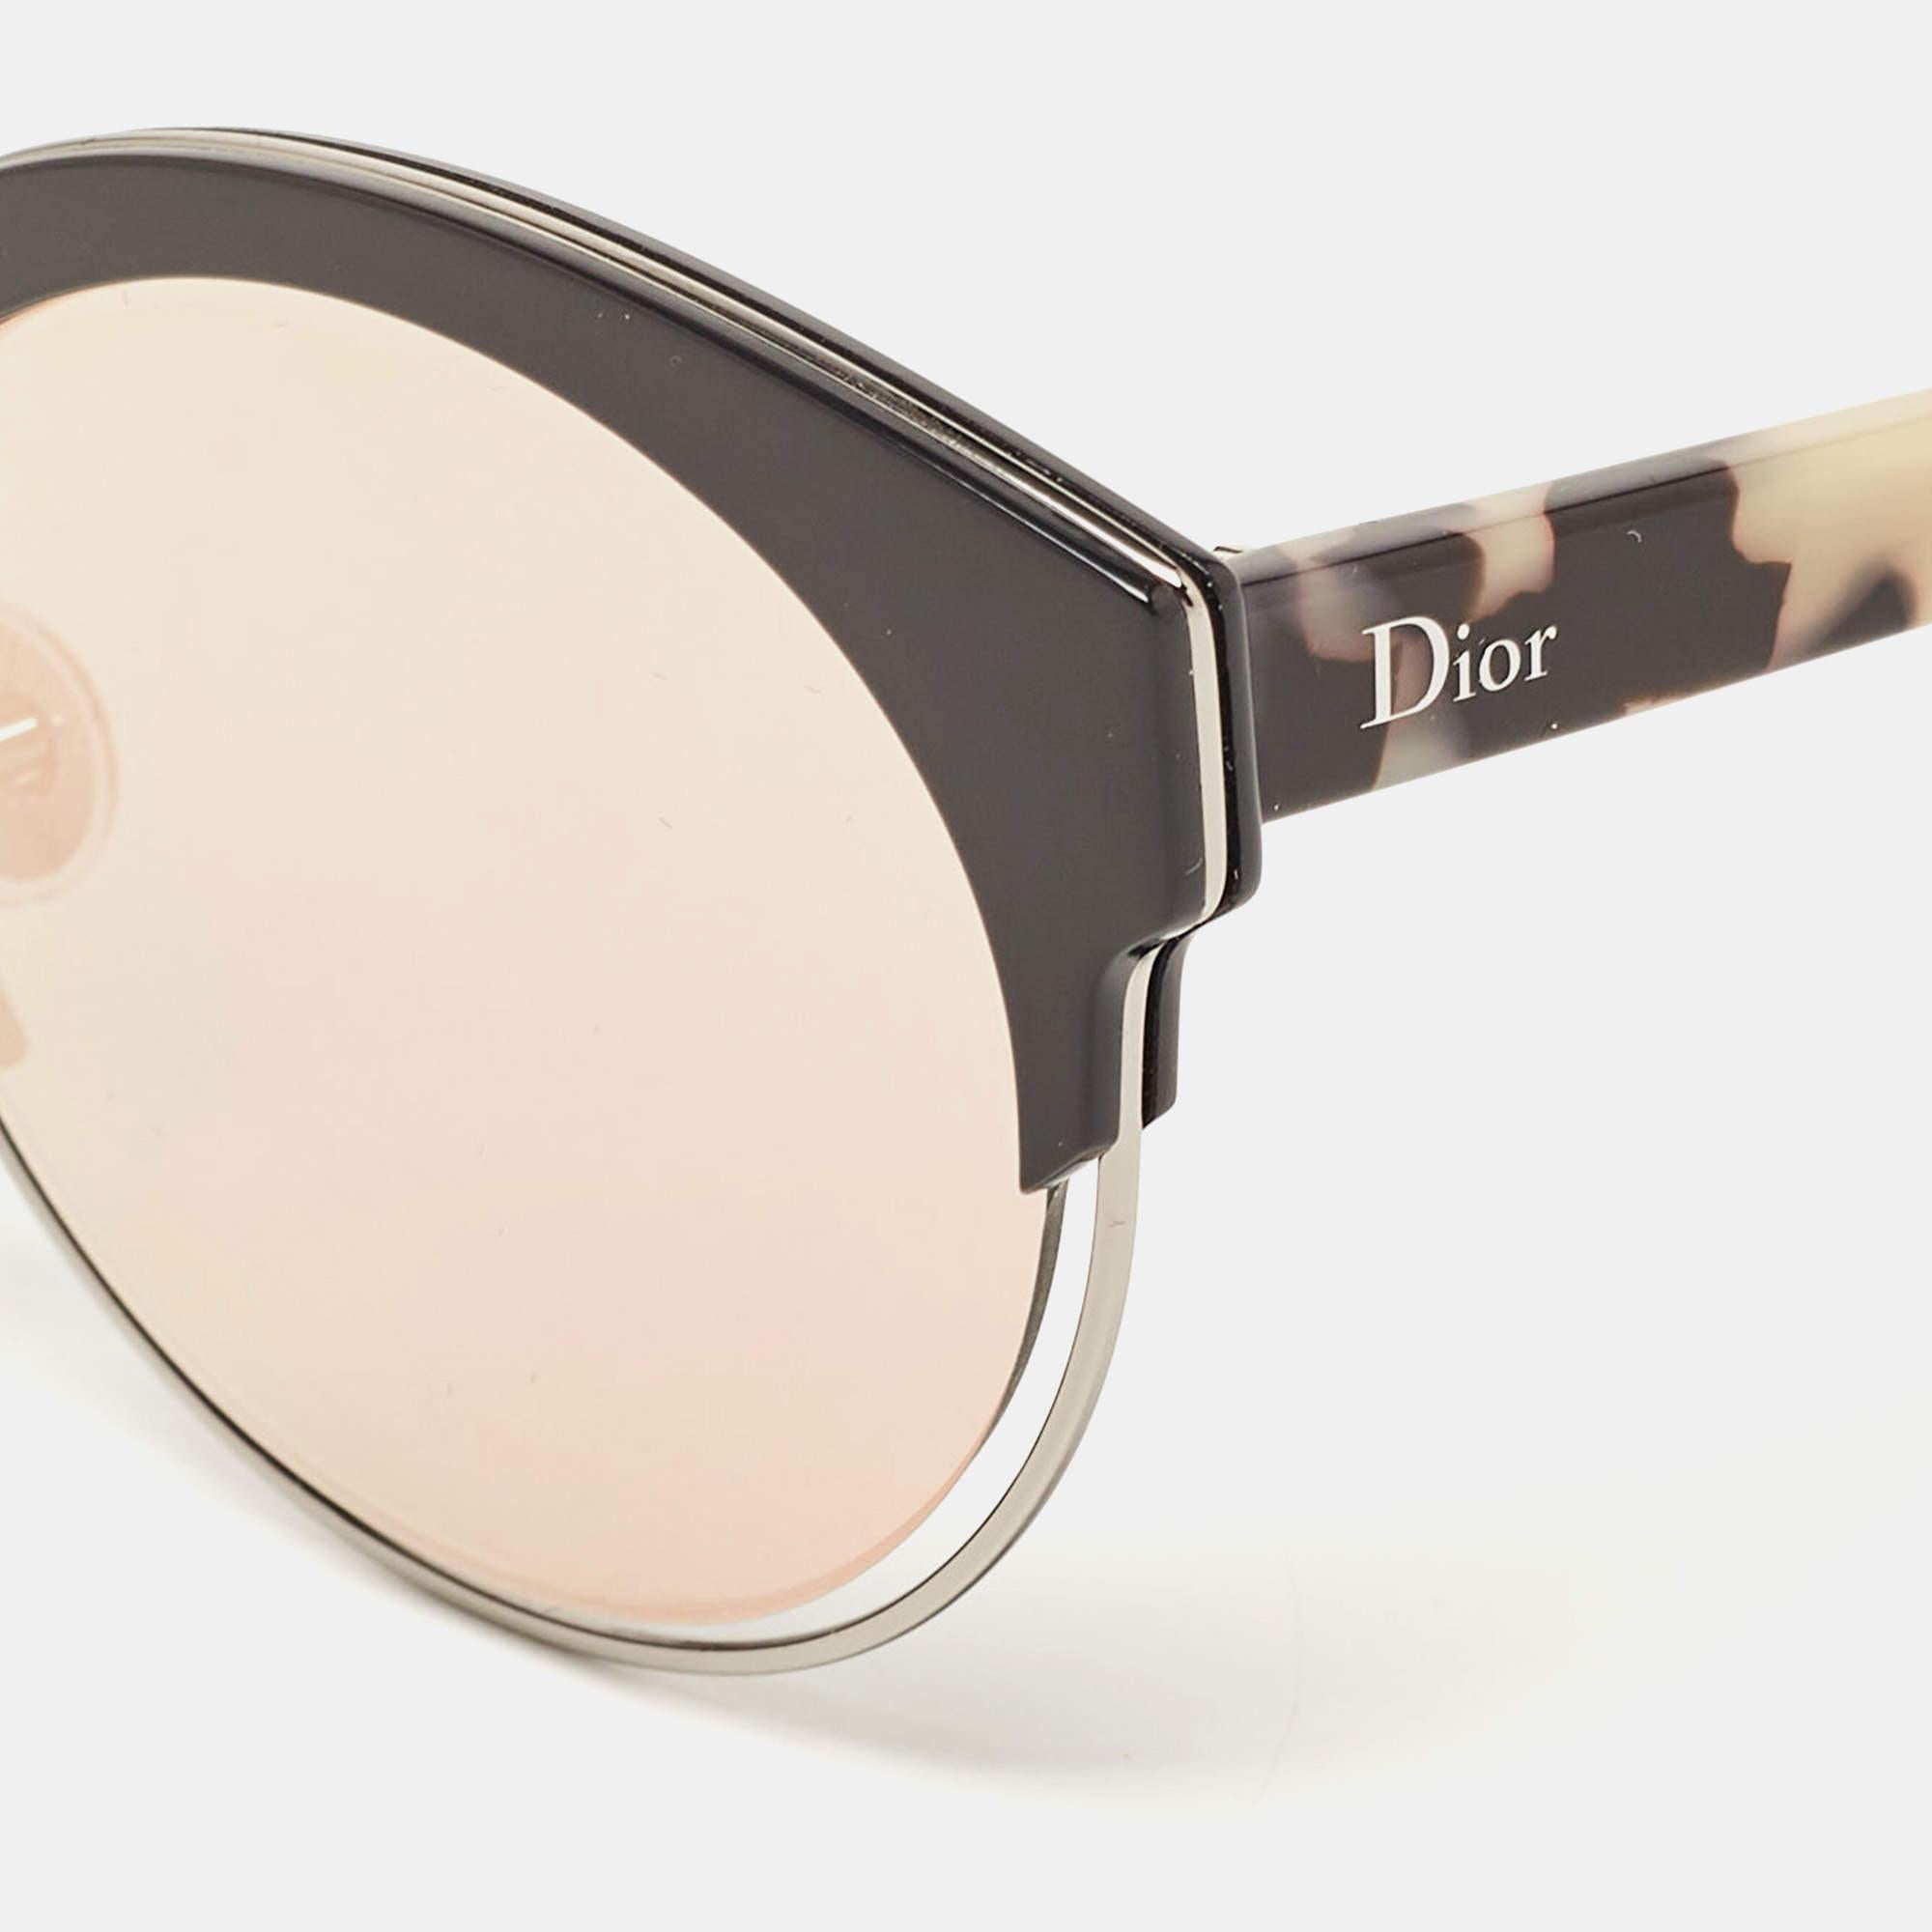 Une fashionista comme vous mérite ce qu'il y a de mieux, comme ces lunettes de soleil de Dior. Conçues pour exprimer votre style avec éloquence, ces lunettes de soleil portent la signature sur les côtés. Tandis que son design vous permet de vous